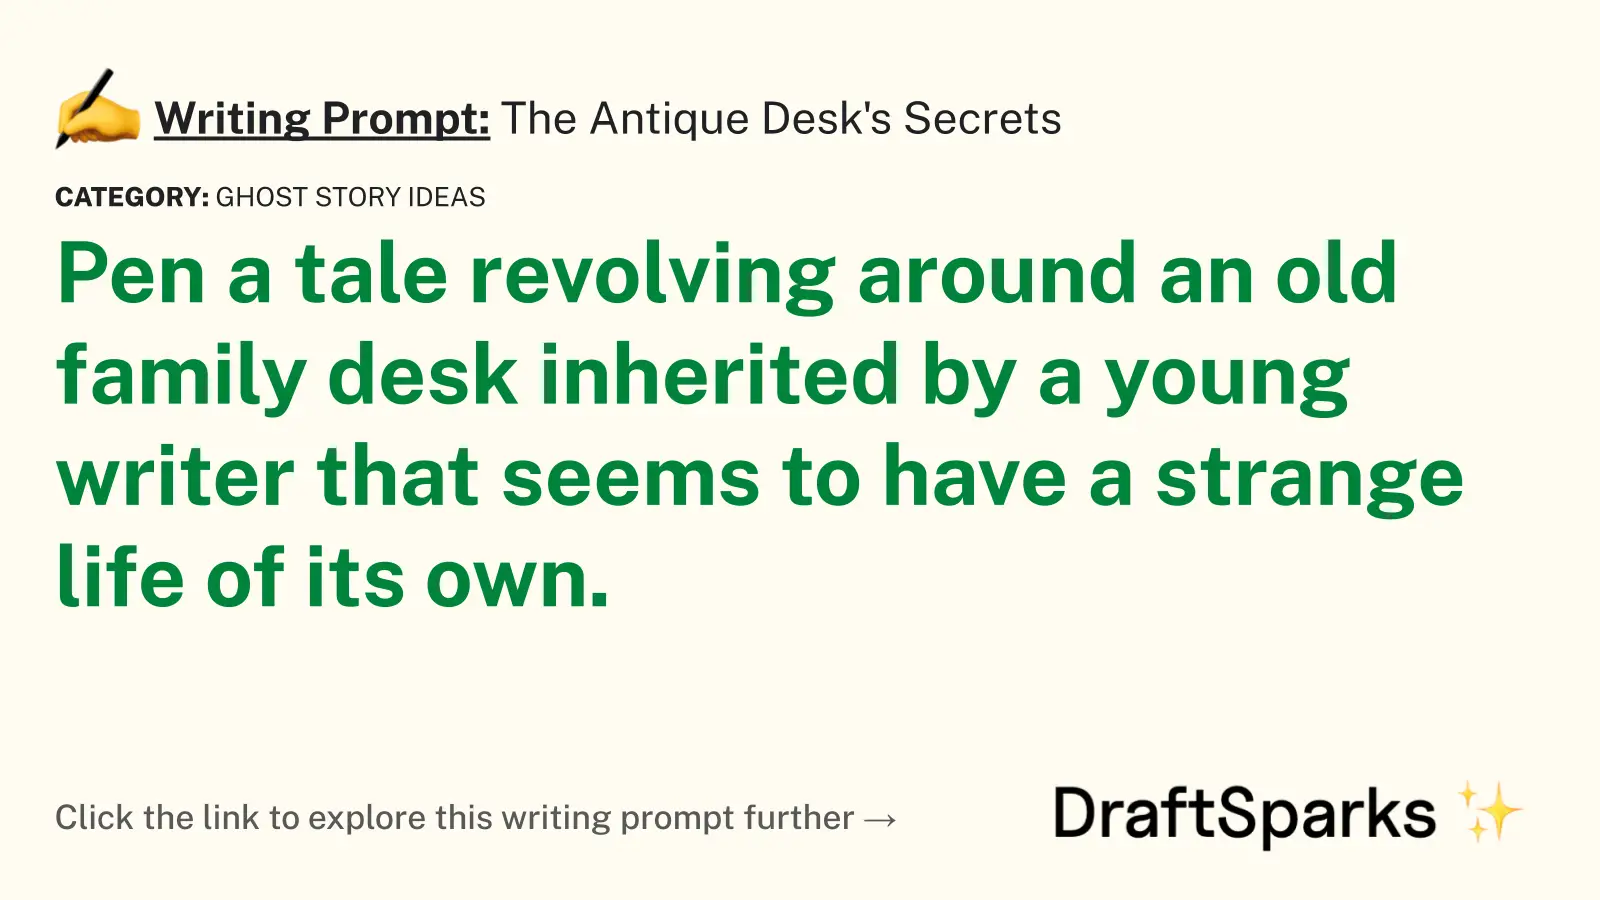 The Antique Desk’s Secrets